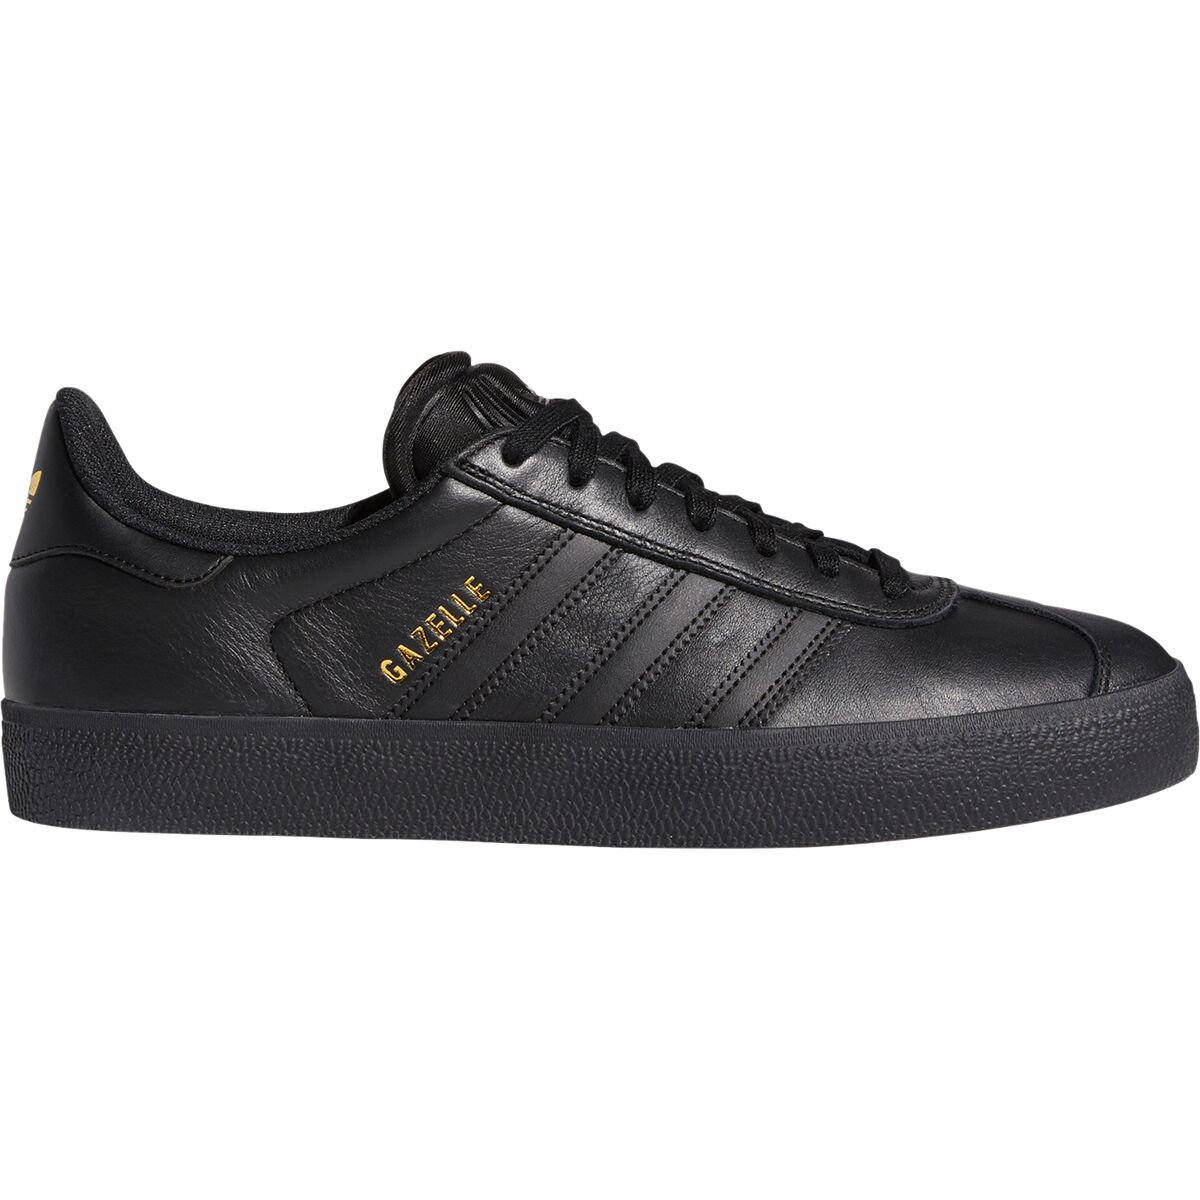 Adidas Gazelle Adv Shoe - Men's